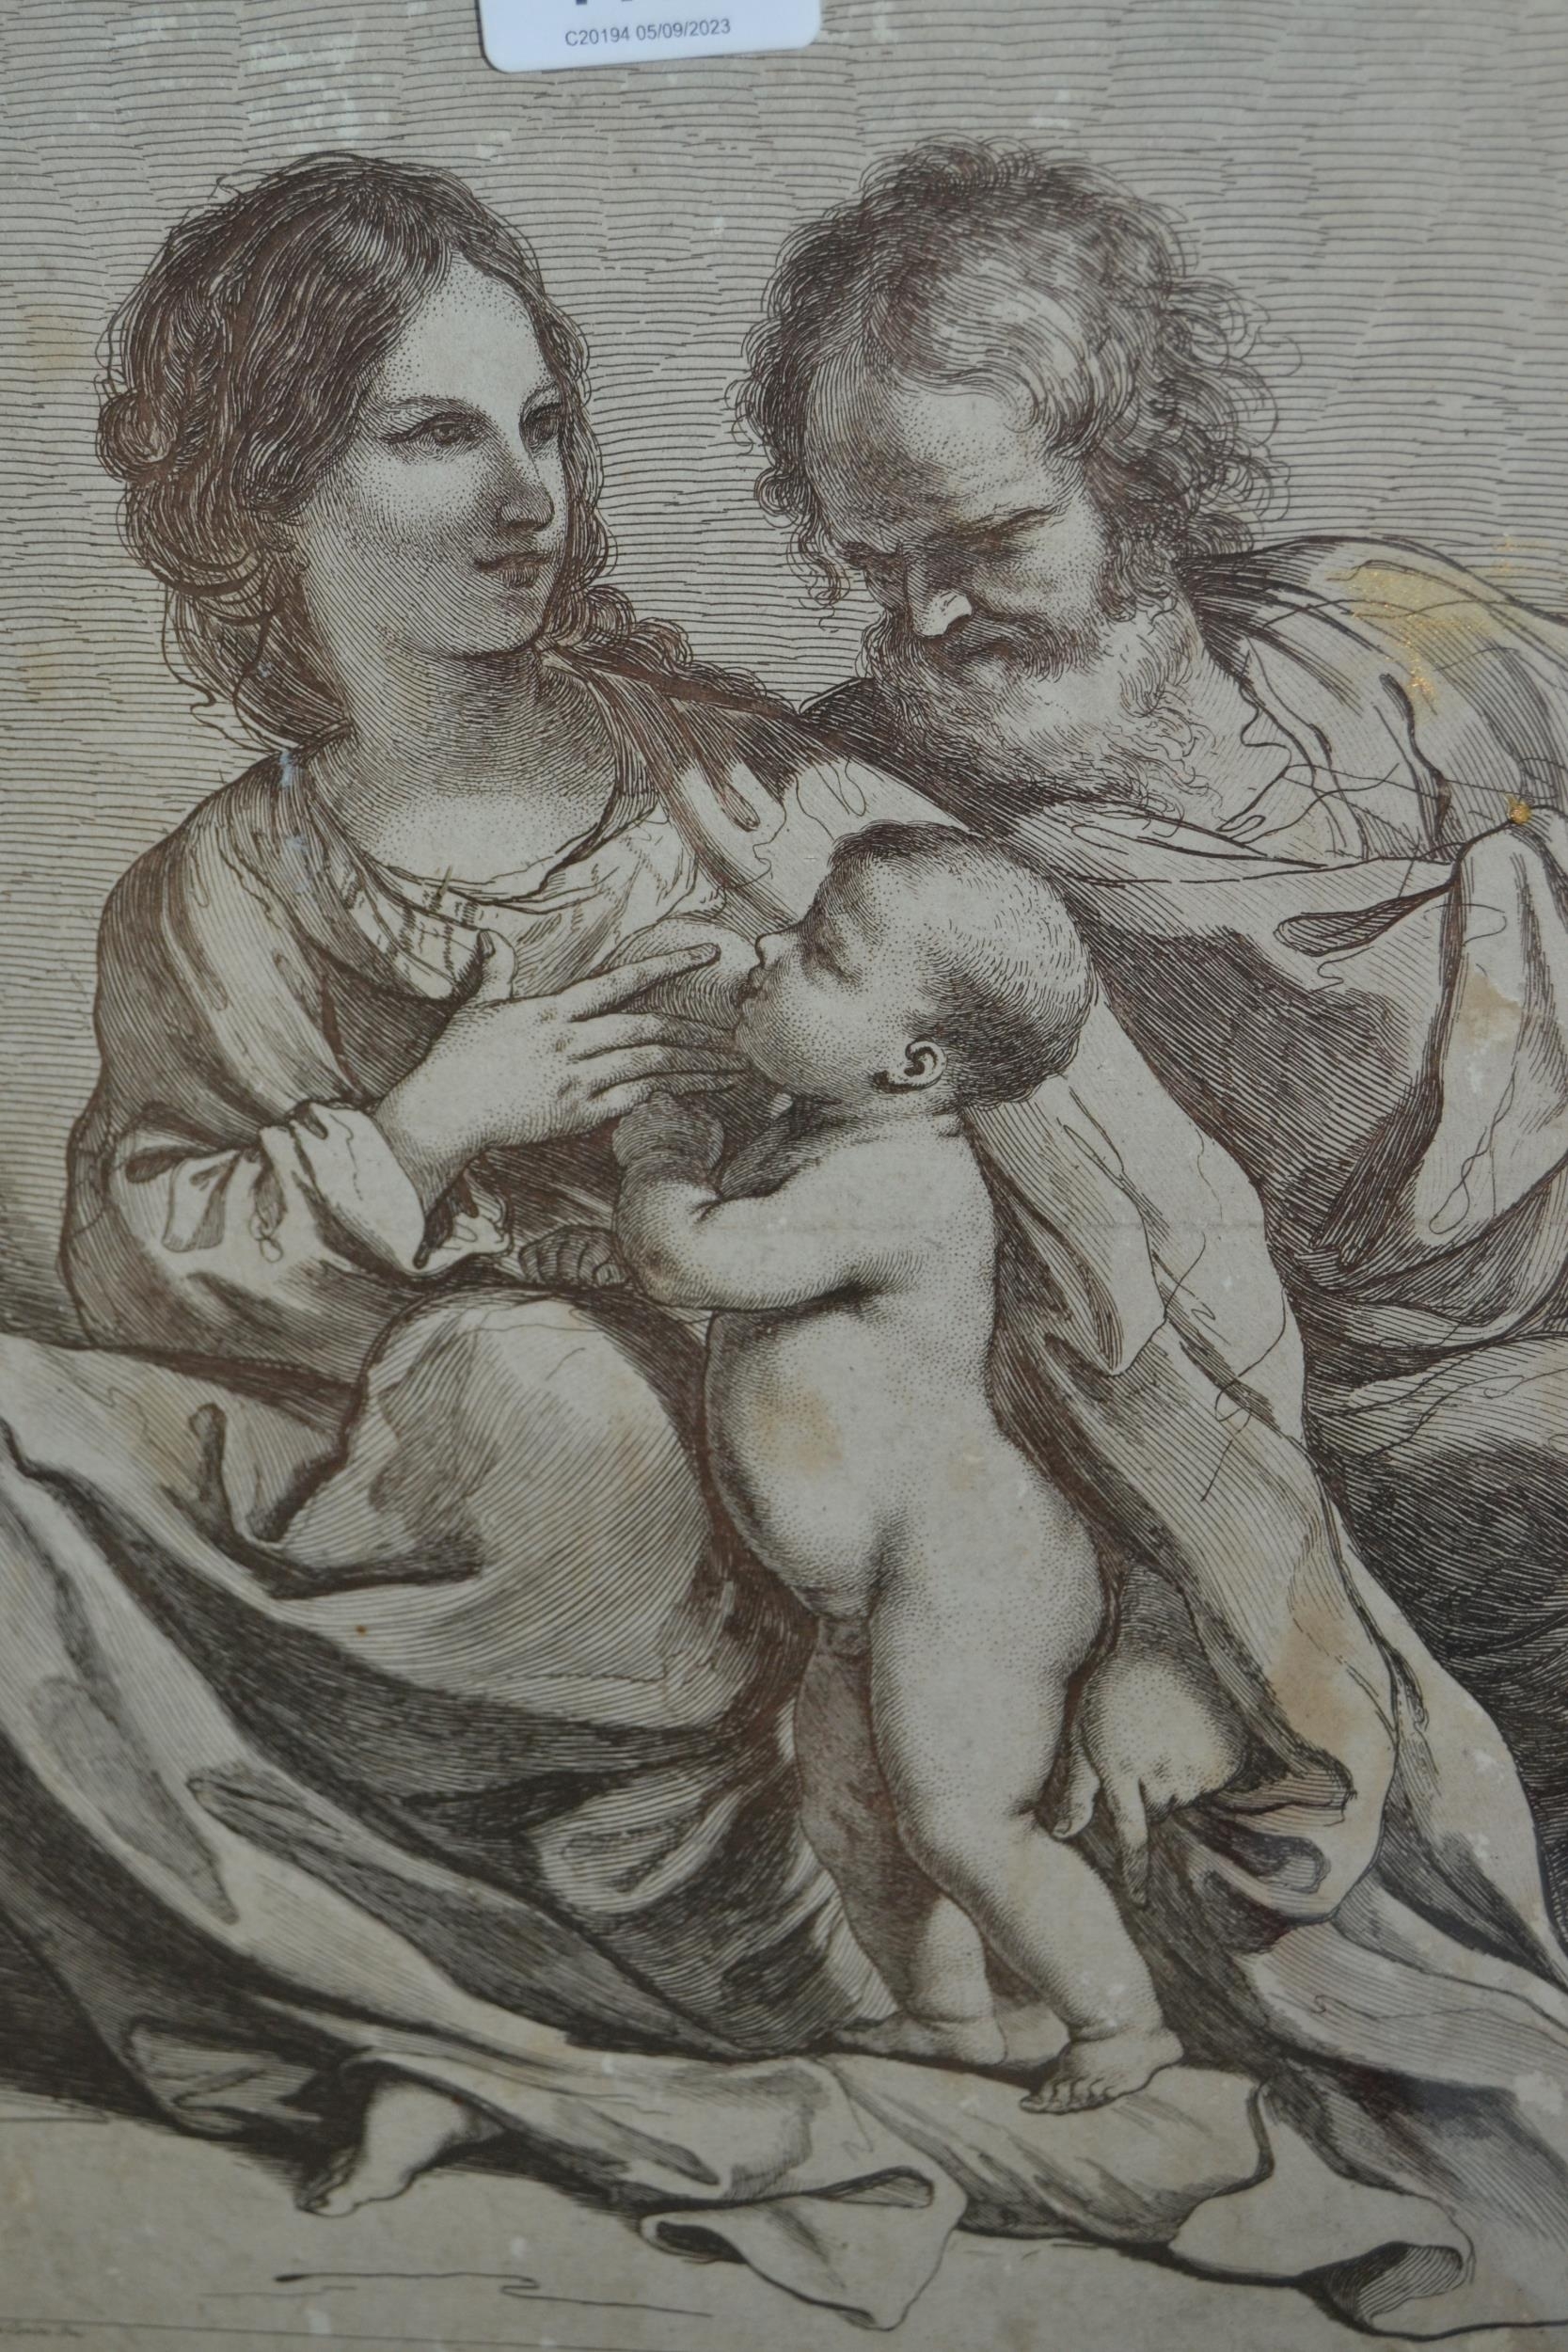 The Holy Family by Francesco Bartolozzi